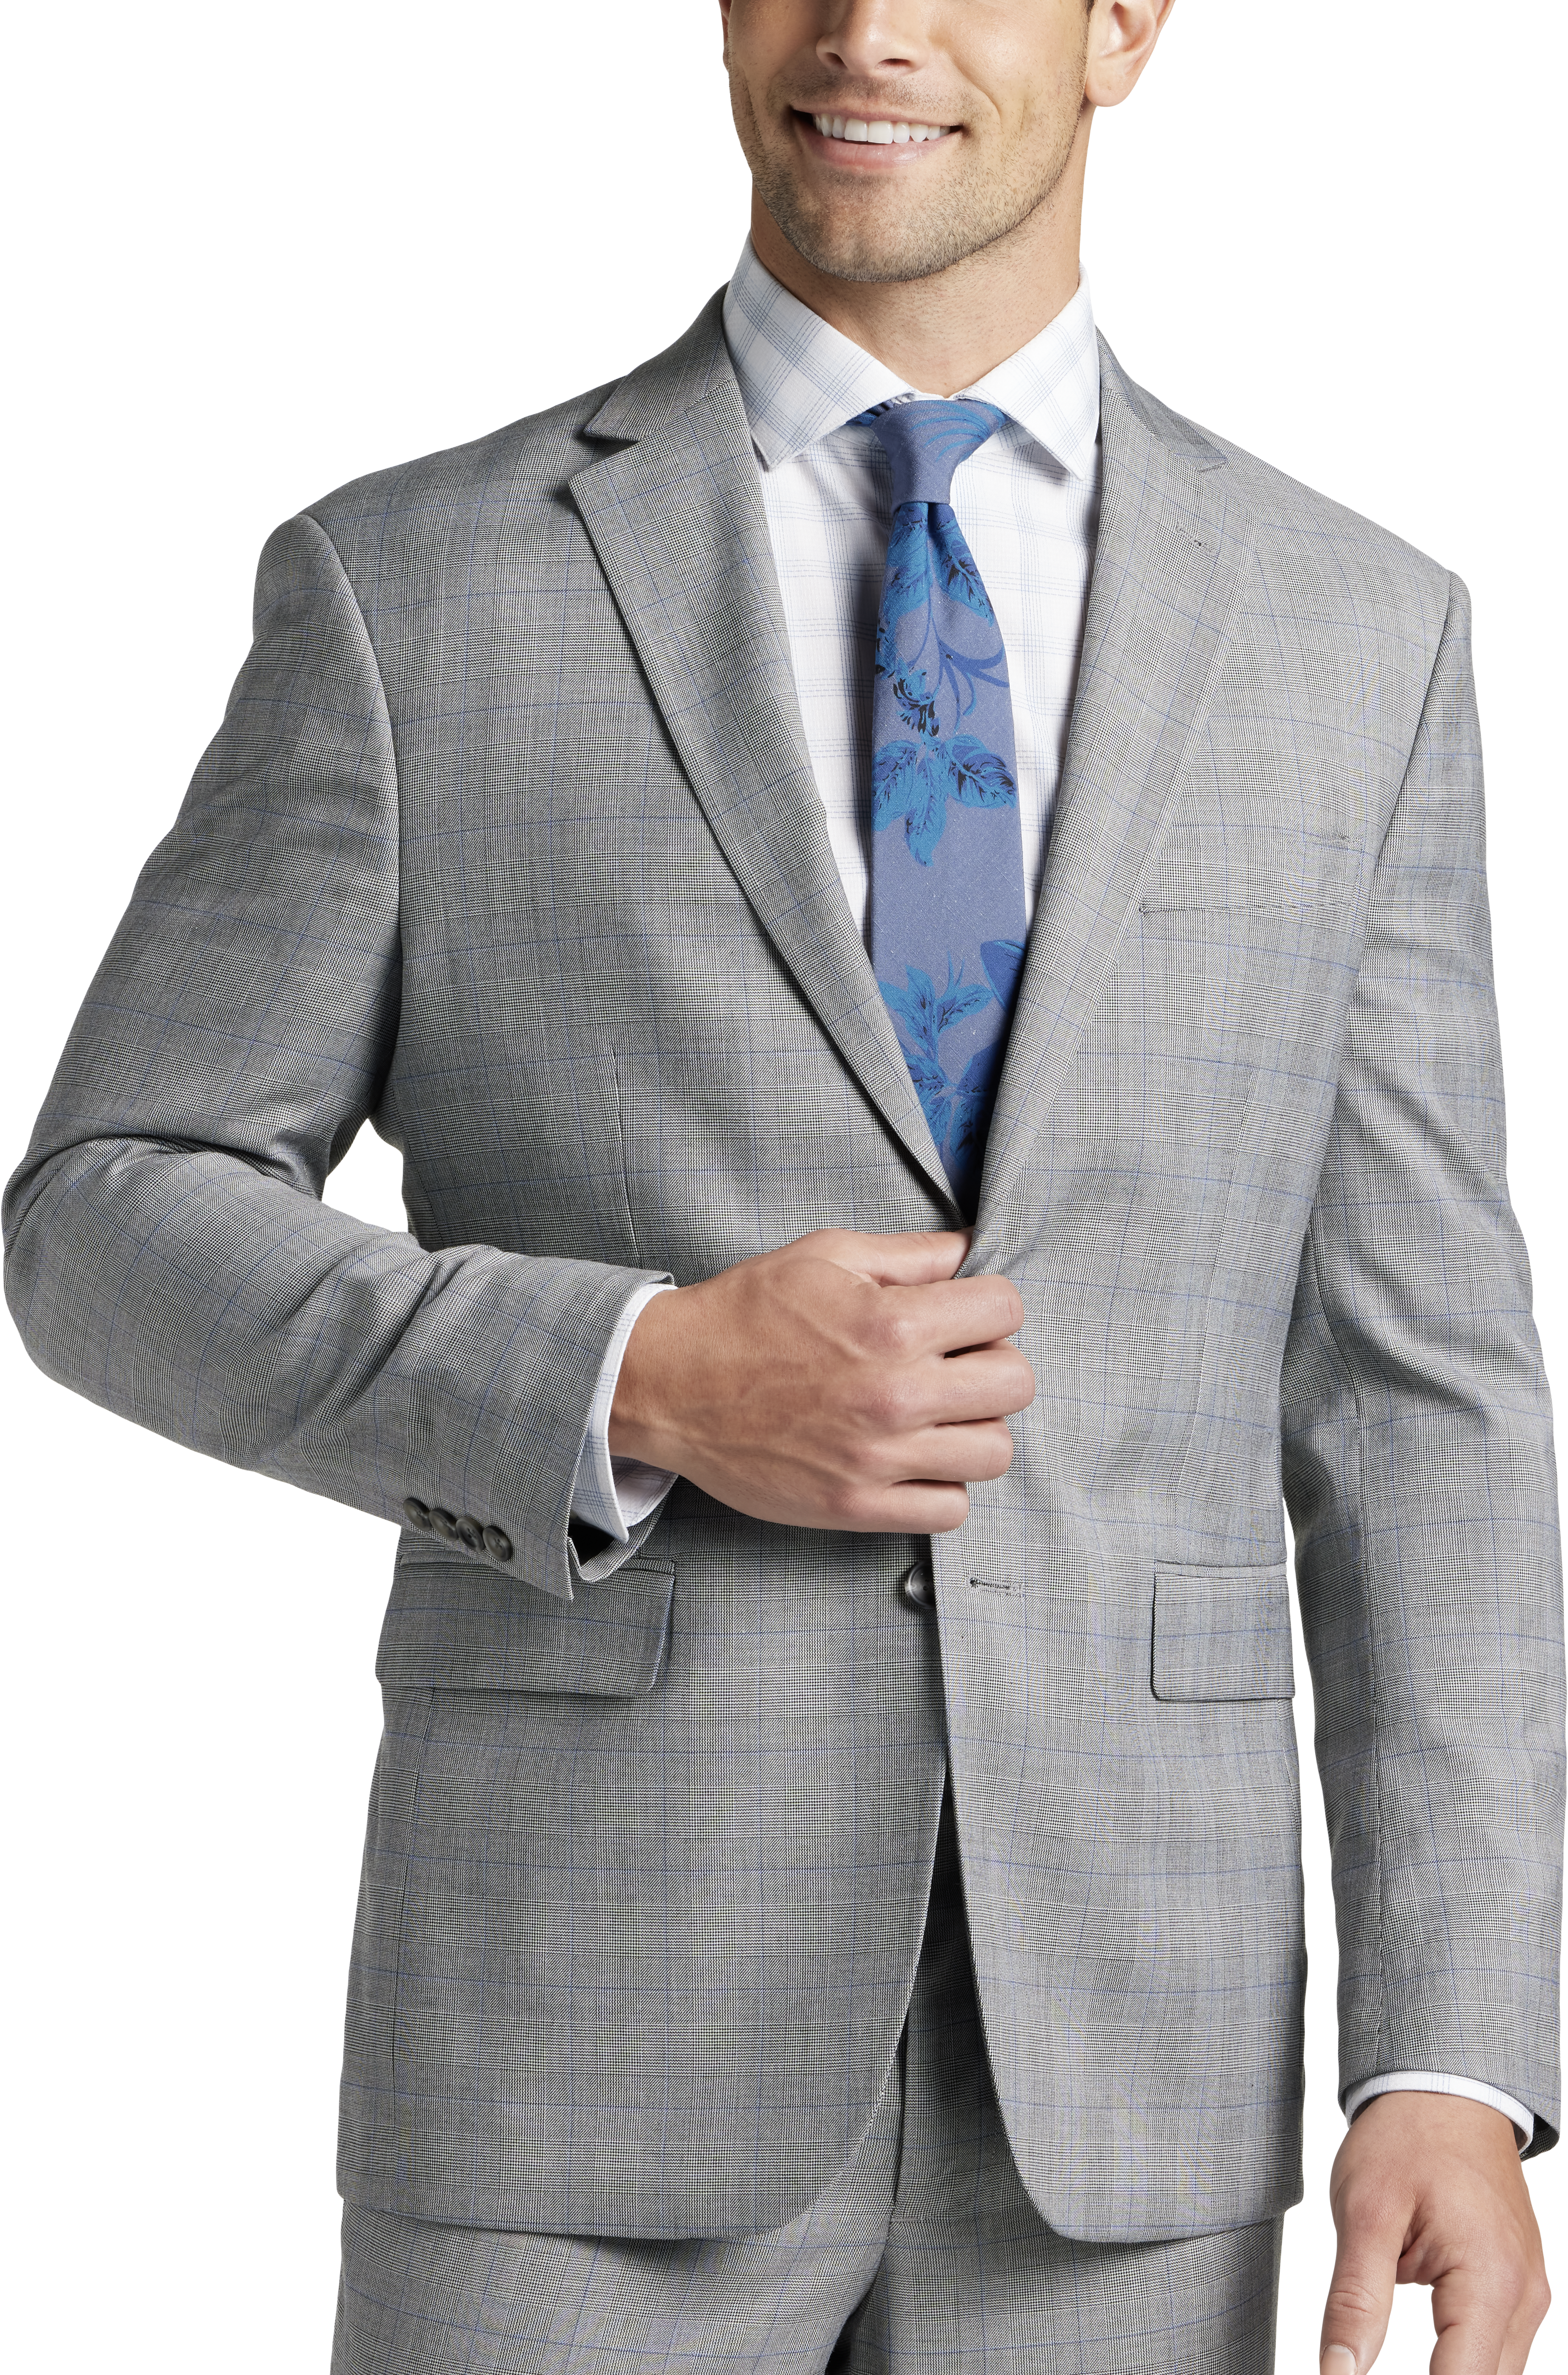 Pronto Uomo Modern Fit Suit, Blue and Gray Plaid - Men's Suits | Men's ...